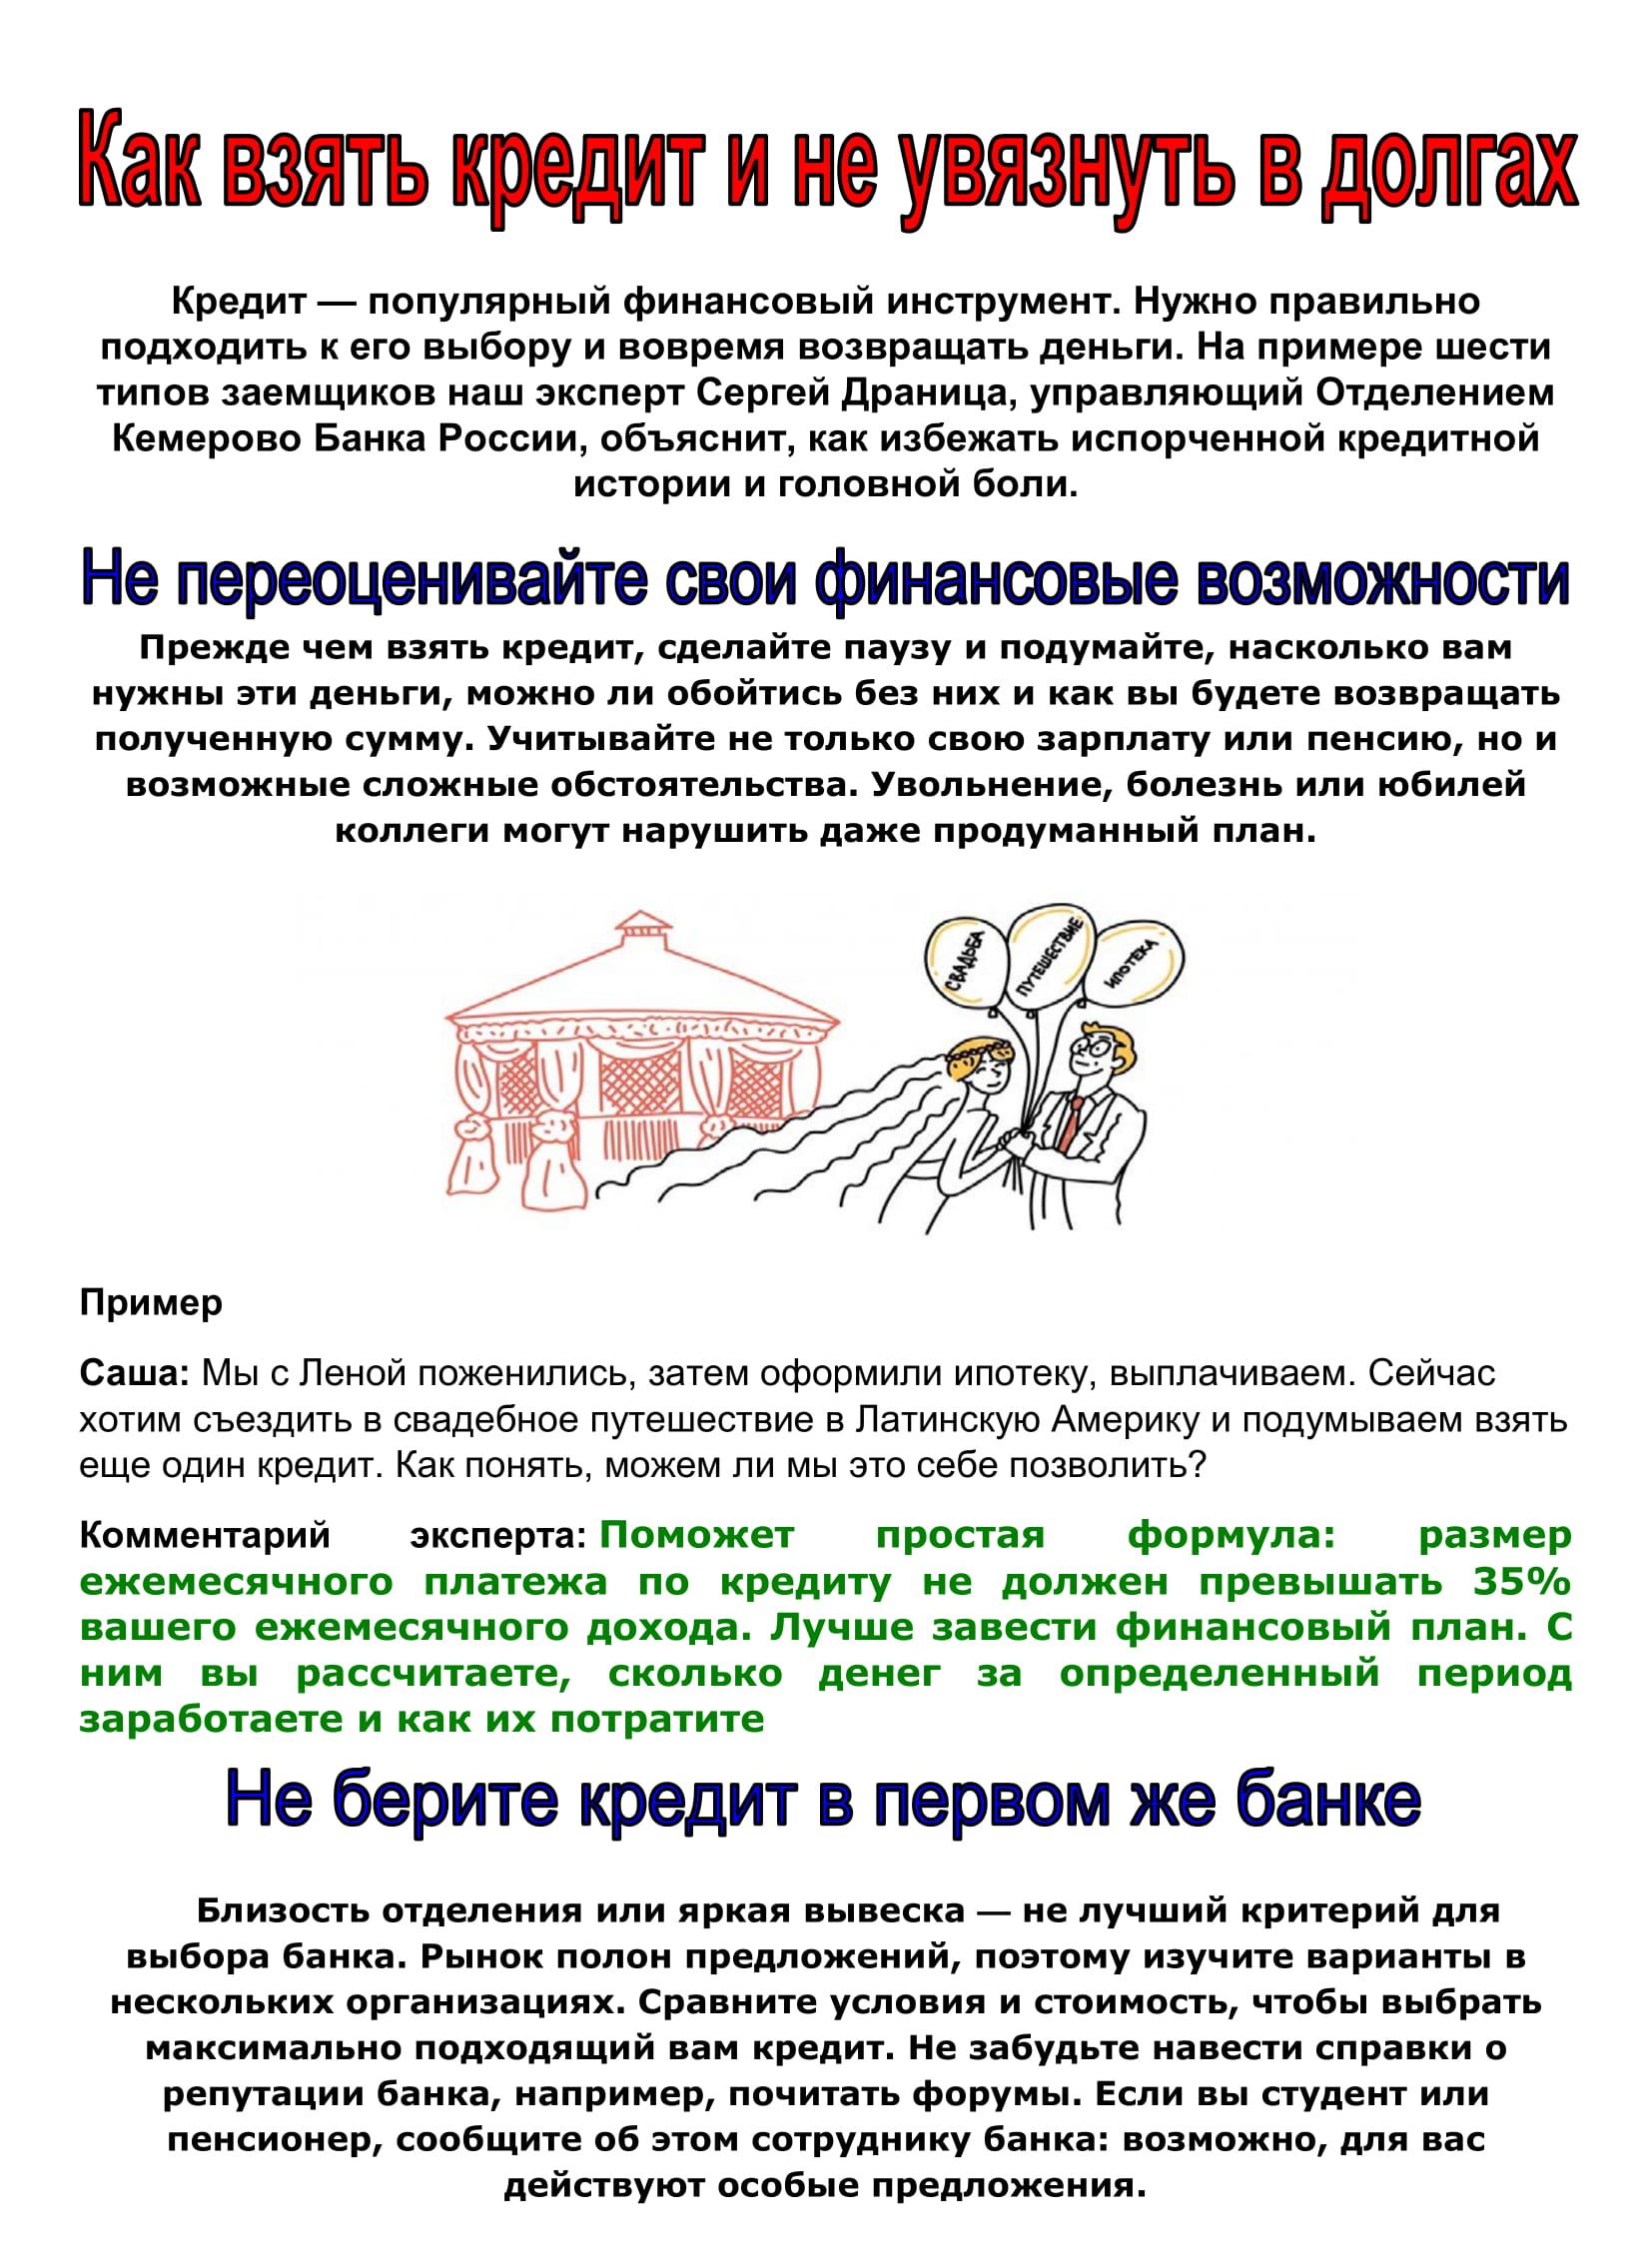 Сбербанк заявка на кредит наличными оформить онлайн заявку москва